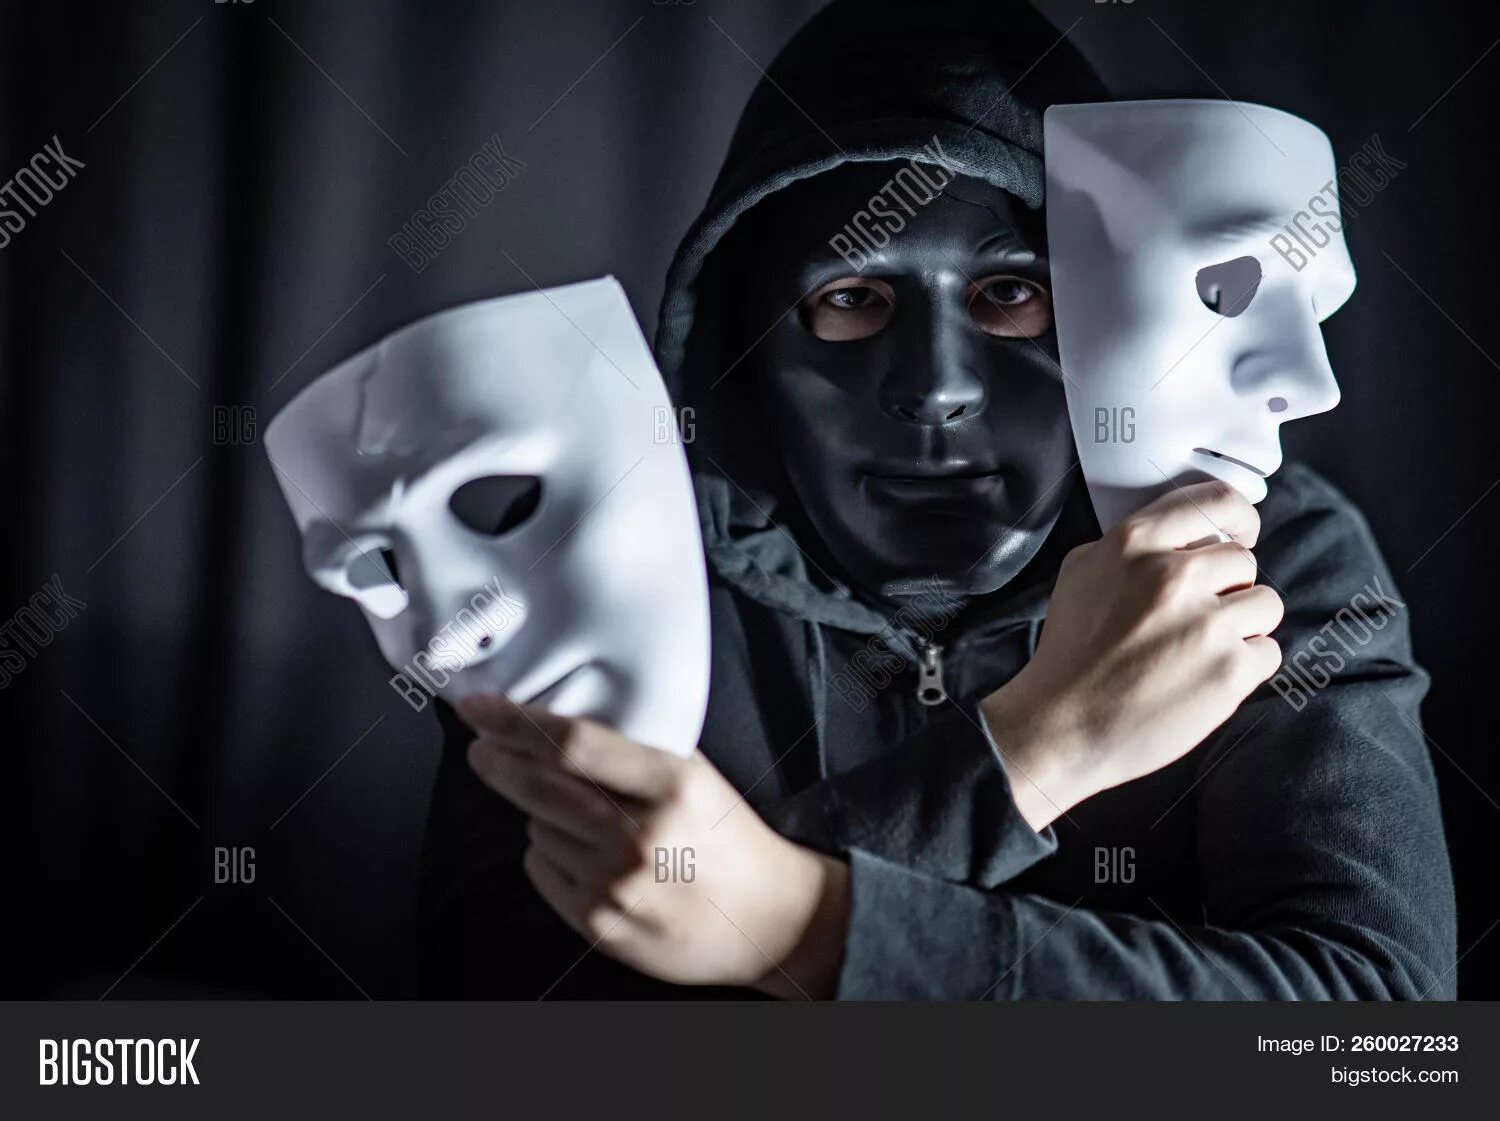 Почему играл в маске. Человек в маске. Человек надевает маску. Человек в театральной маске. Человек в белой маске.